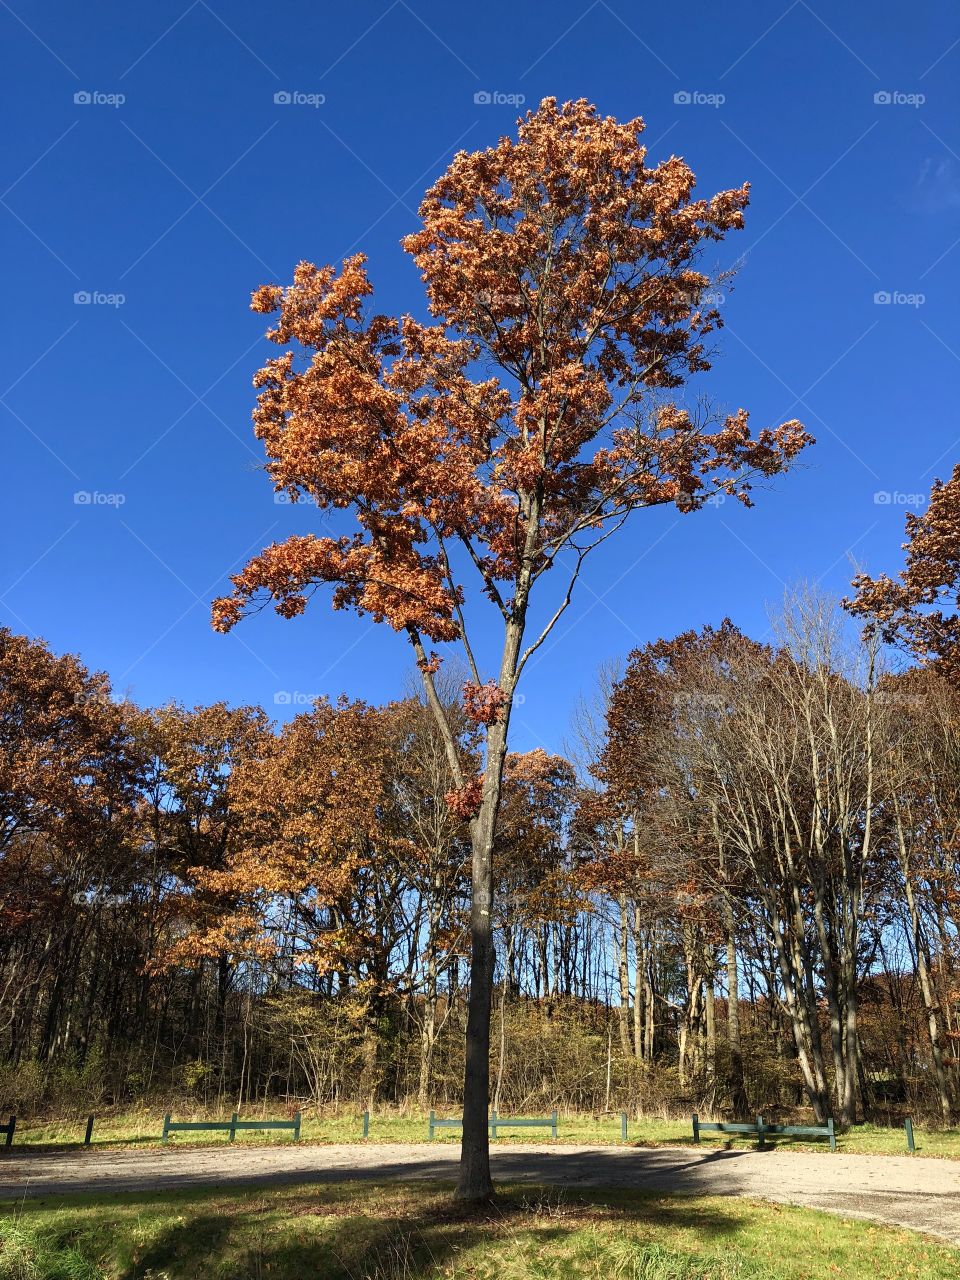 Tree In sky